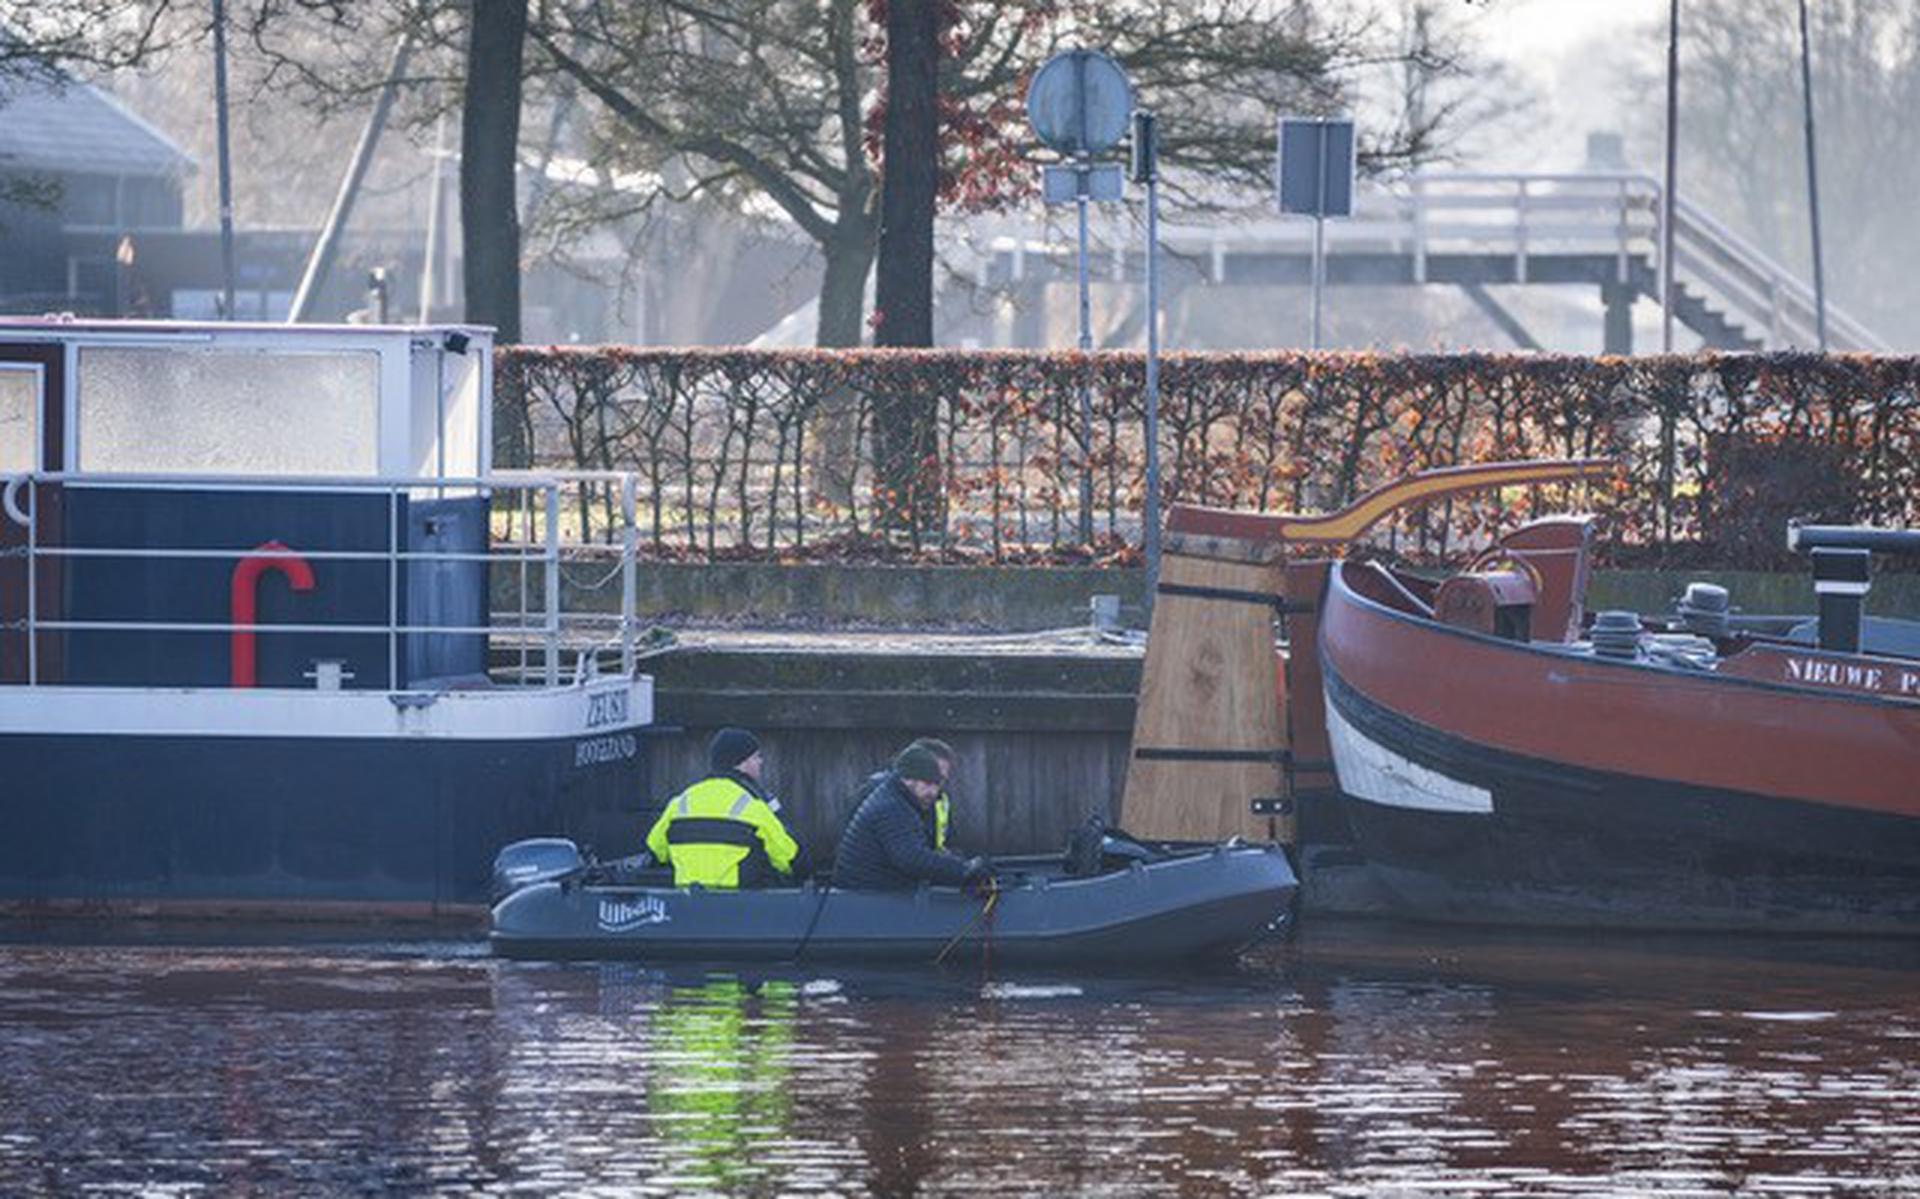 De politie kamt met een sonartorpedo en onderwaterdrone het haventje in Sappemeer uit.